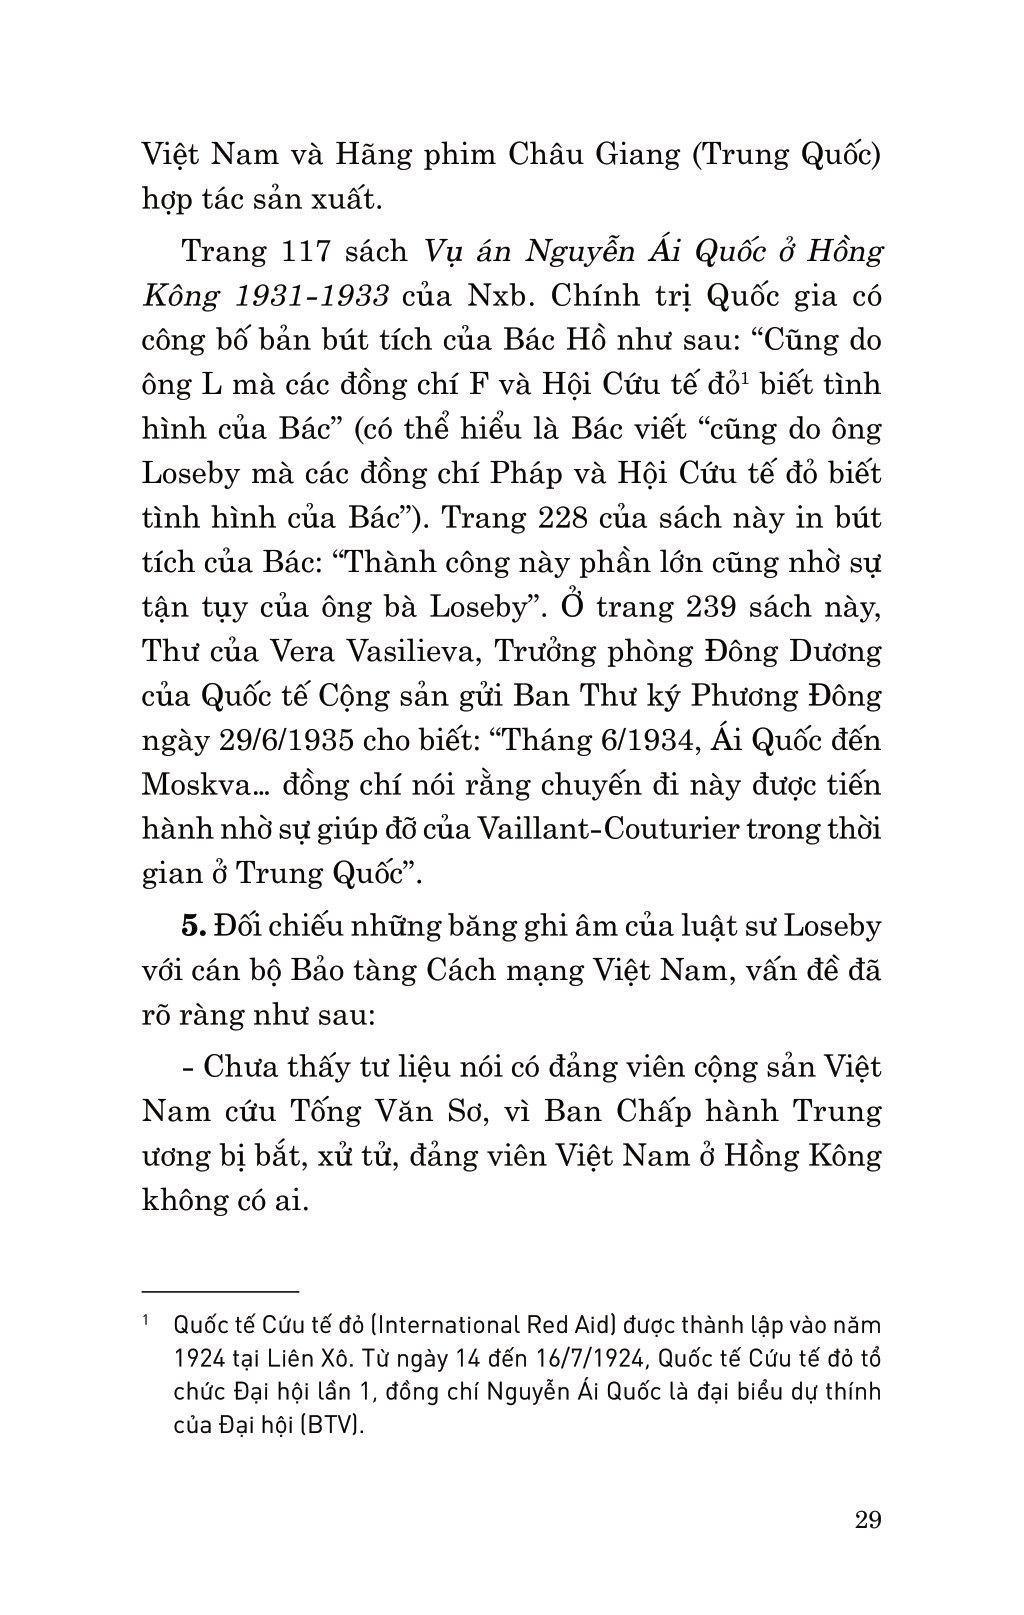 Di Sản Hồ Chí Minh - Nguyễn Ái Quốc Và Vụ Án Hồng Kông Năm 1931